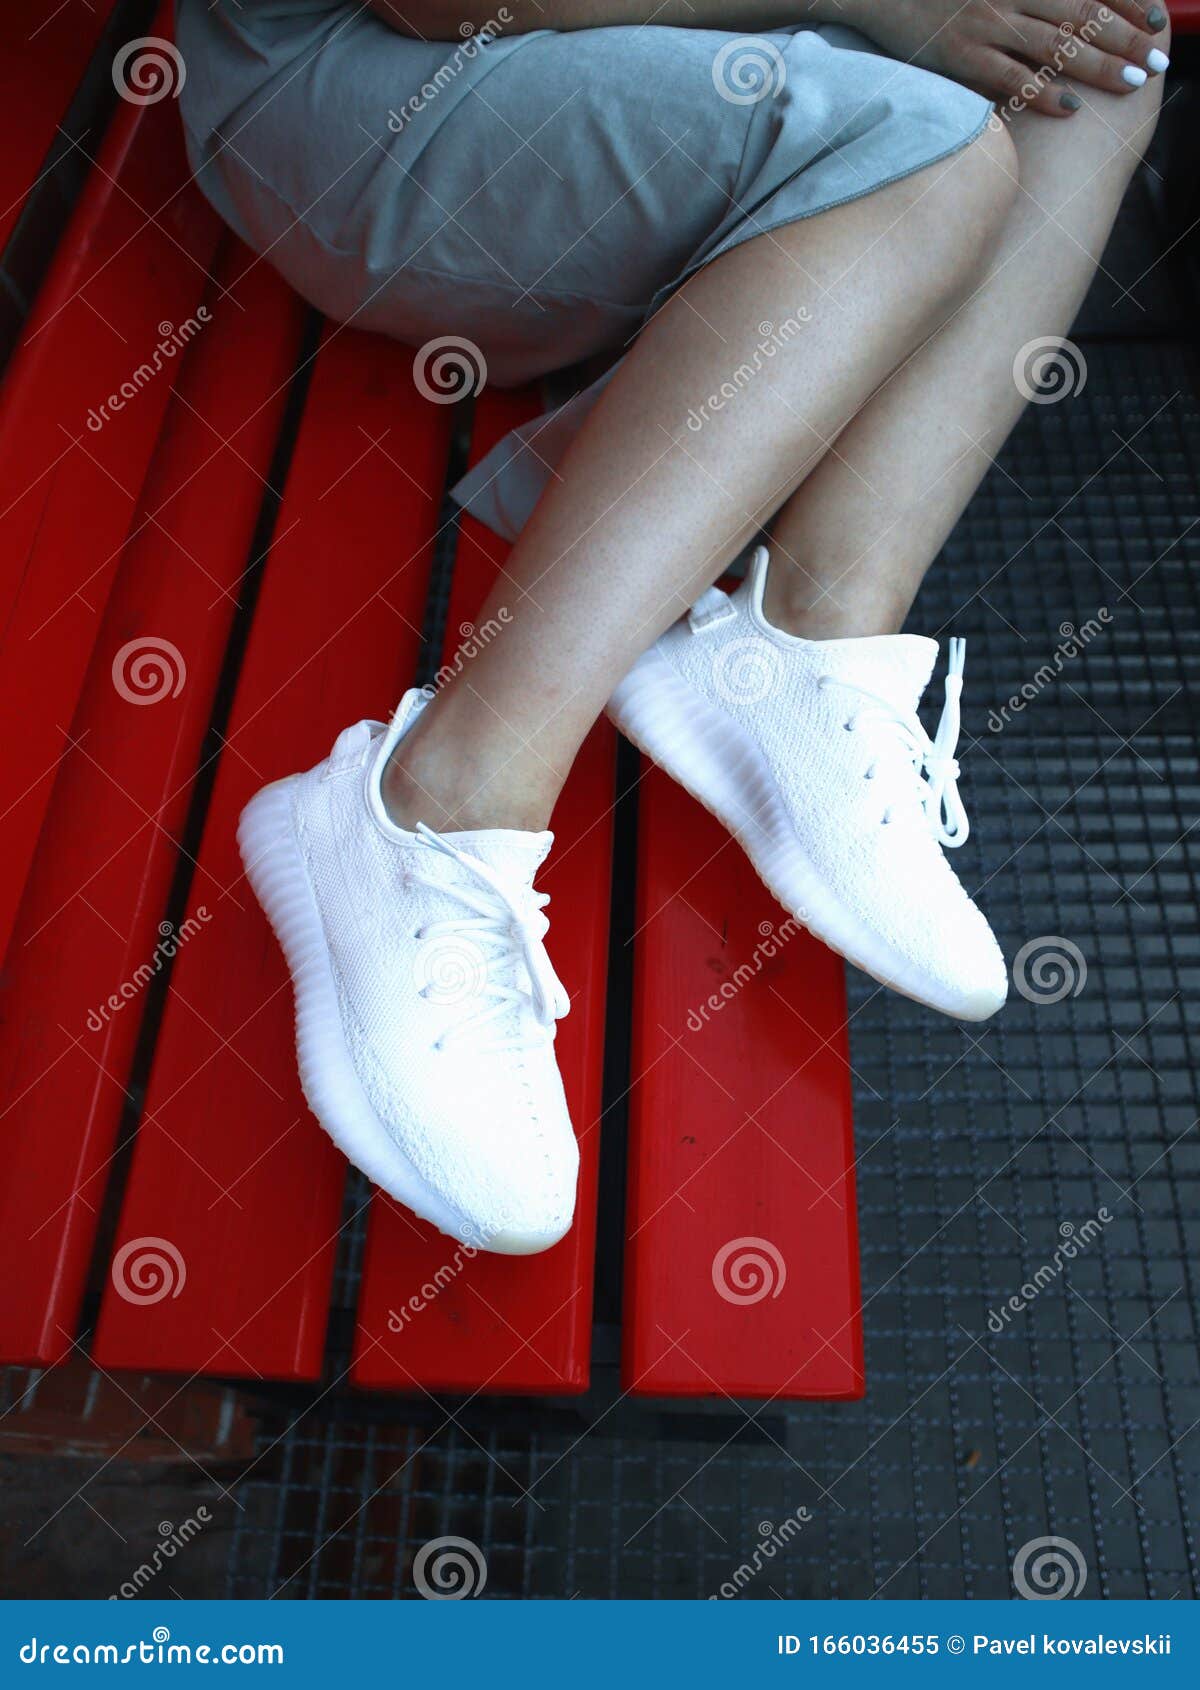 Ein Mädchen in Kleidung in Weißen Adidas Sneakers Yeezy Boost 350 V2  Redaktionelles Bild - Bild von moskau, getrennt: 166036455